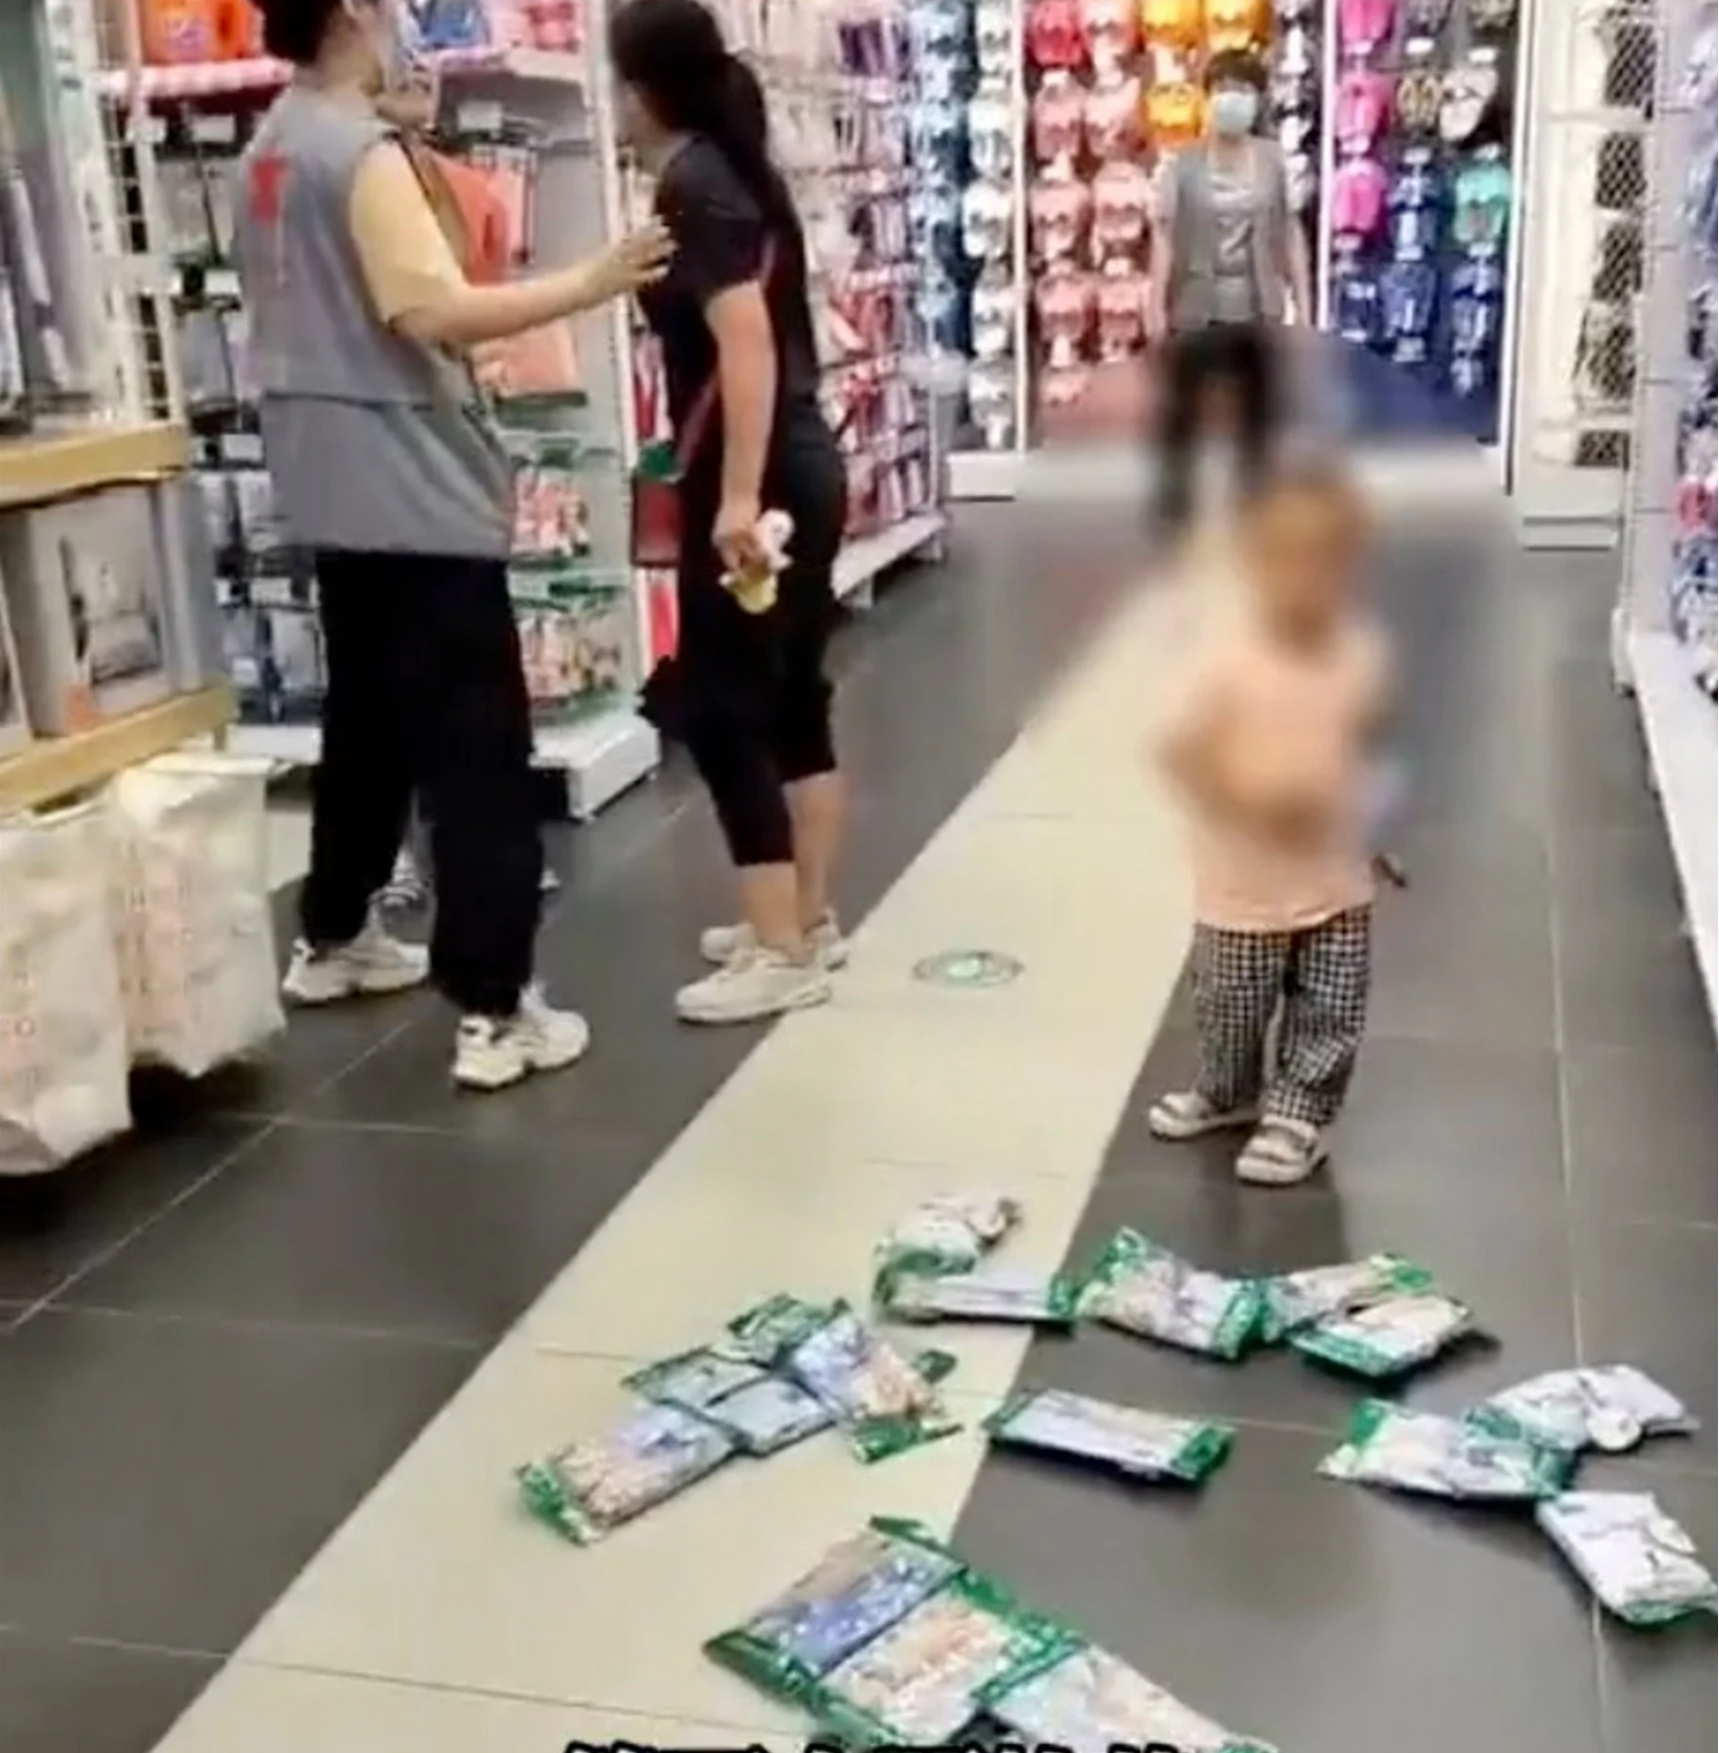 “Cứ để con chị chơi”: Bà mẹ mắng nhiếc nhân viên vì ngăn con mình phá hàng trong siêu thị - Ảnh 1.